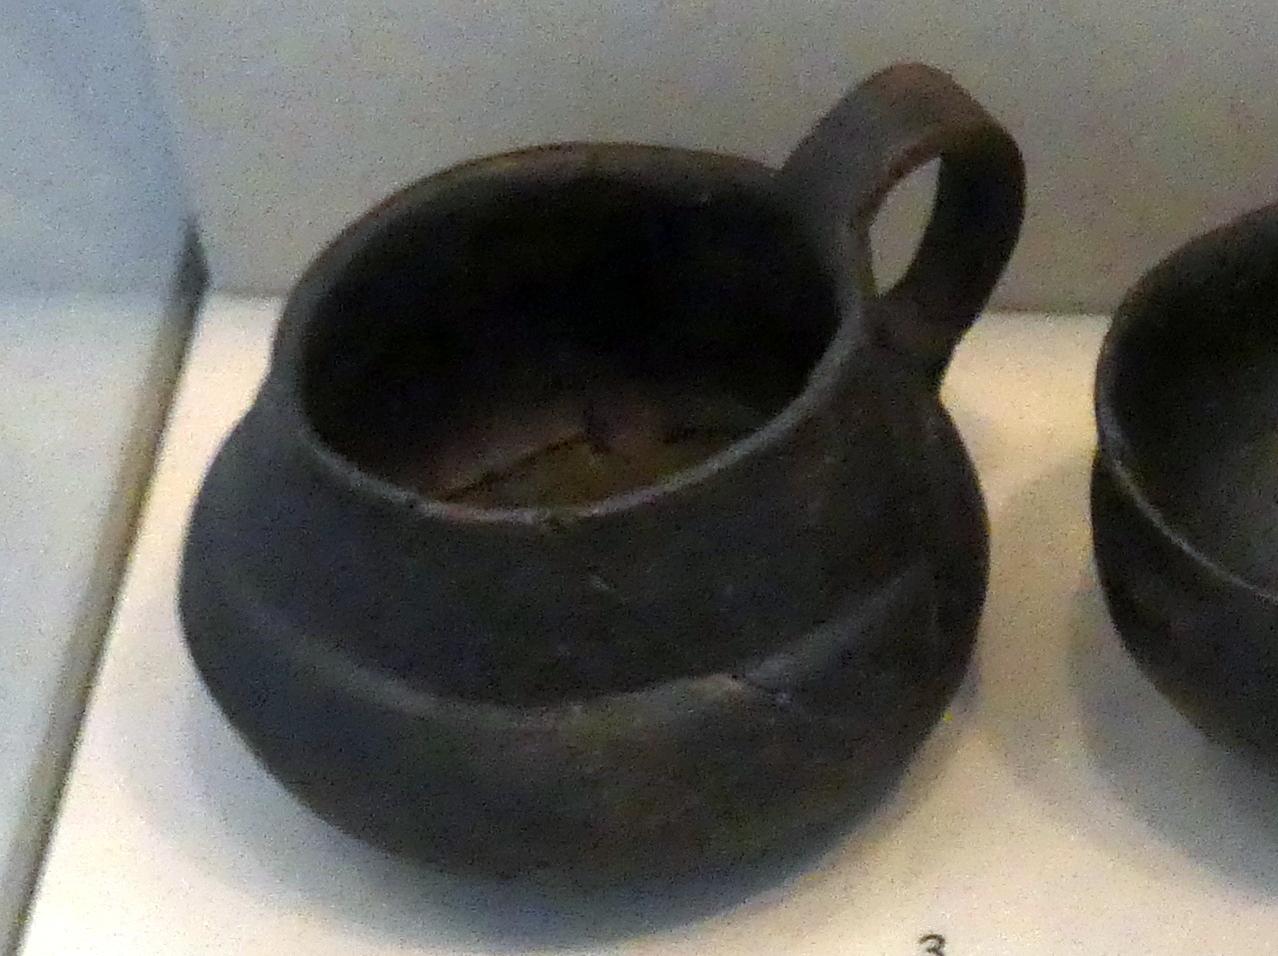 Kegelhalstasse, Hallstattzeit, 700 - 200 v. Chr., Bild 1/2